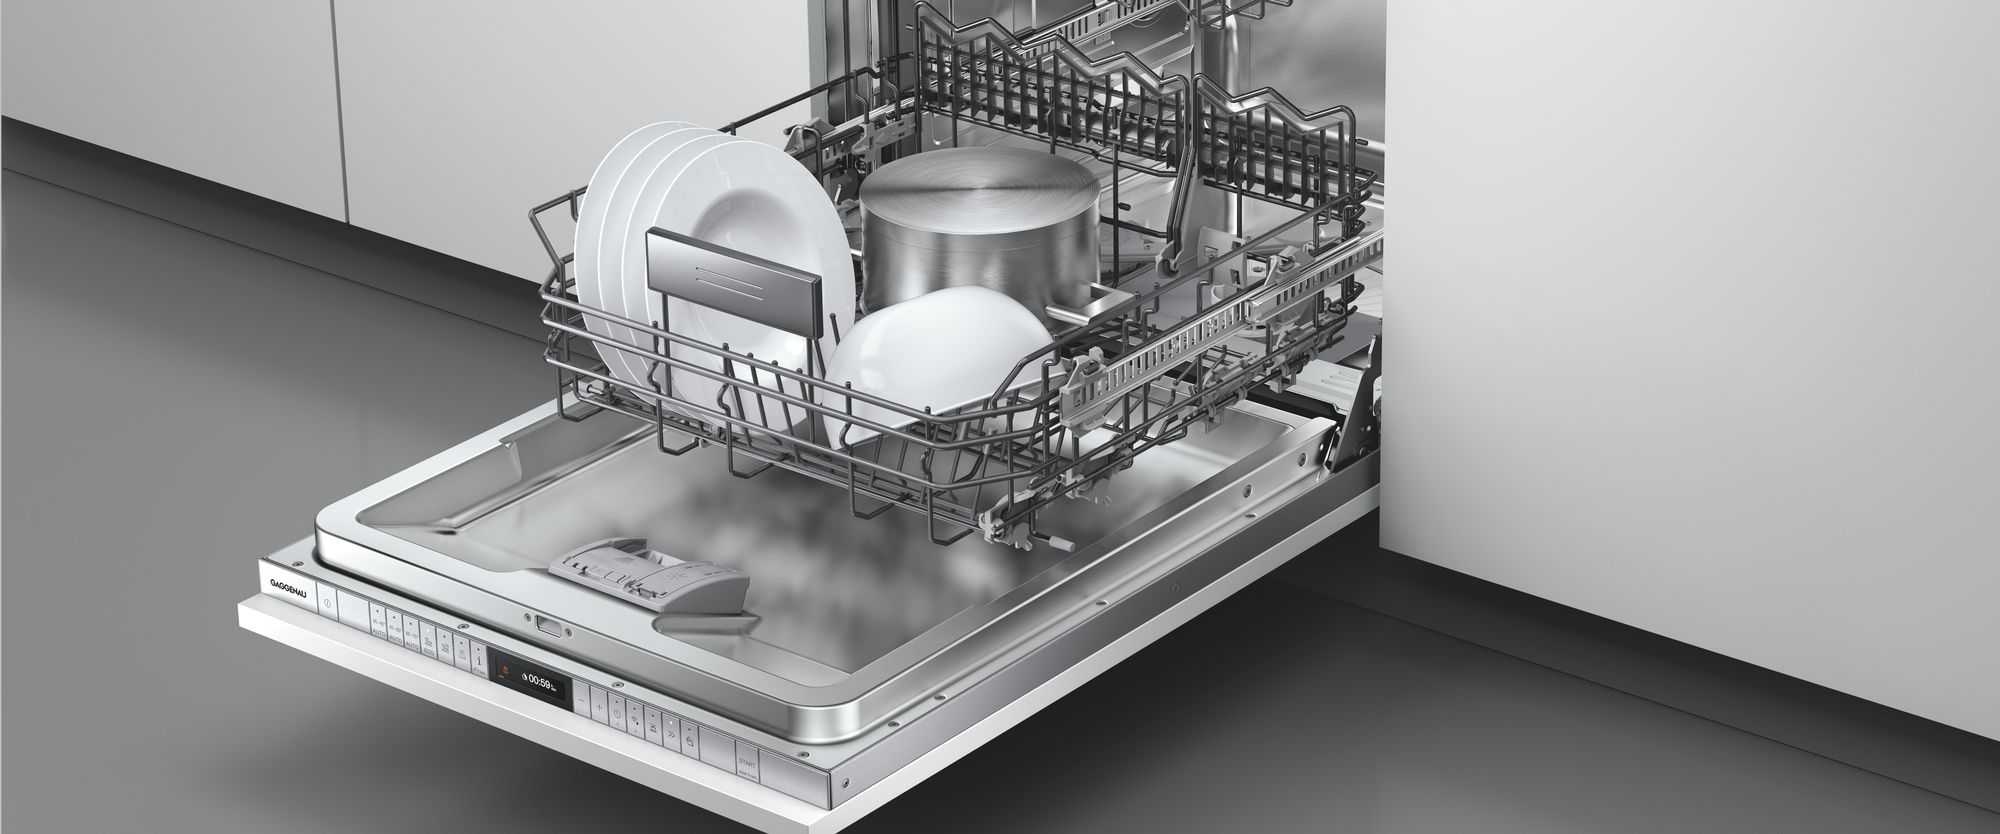 Gaggenau Dishwashers 200 Series by FCI London